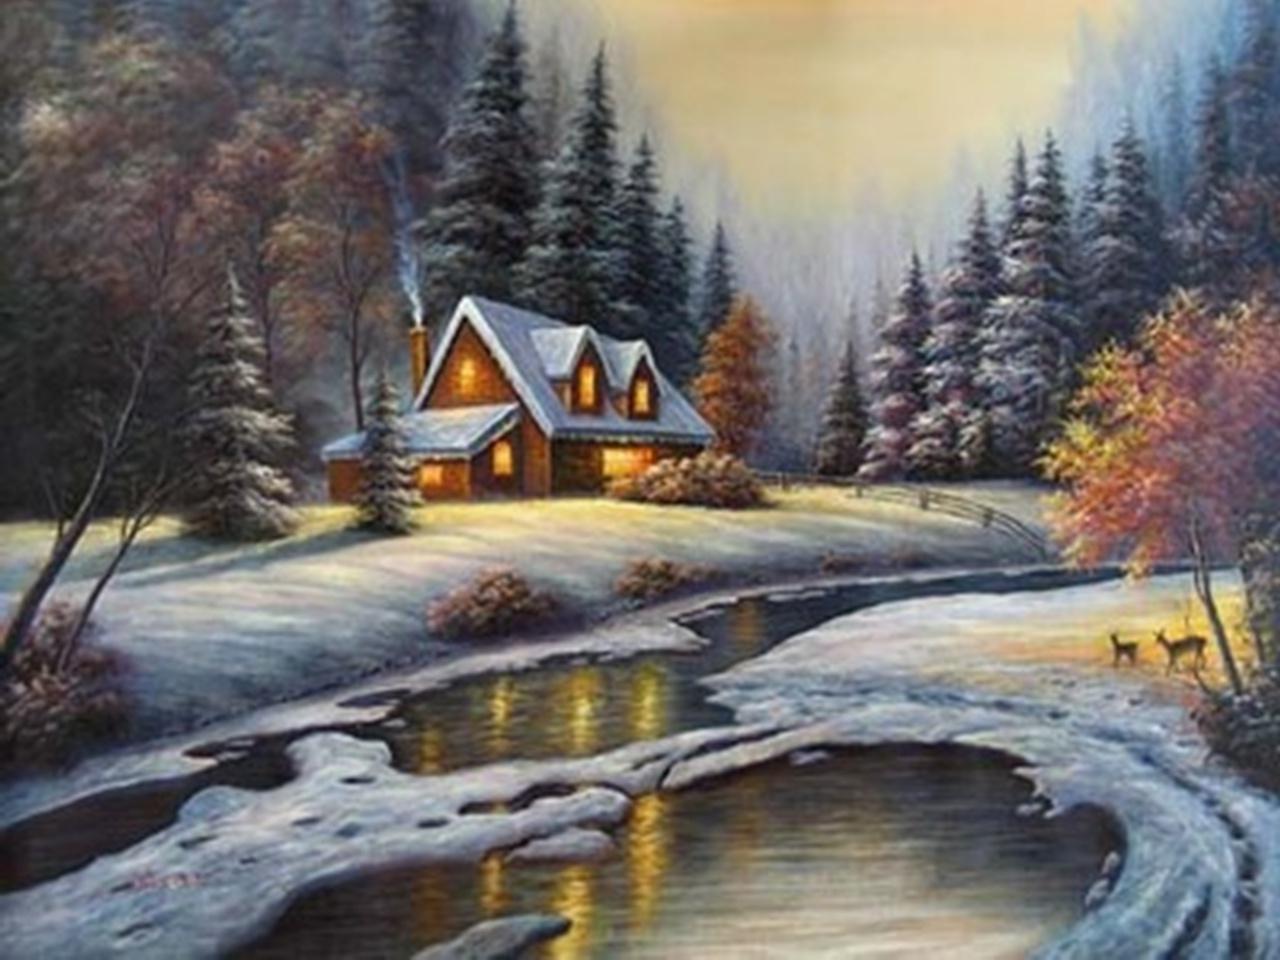 By vickie wade paintings winter creek art 952 - Winter